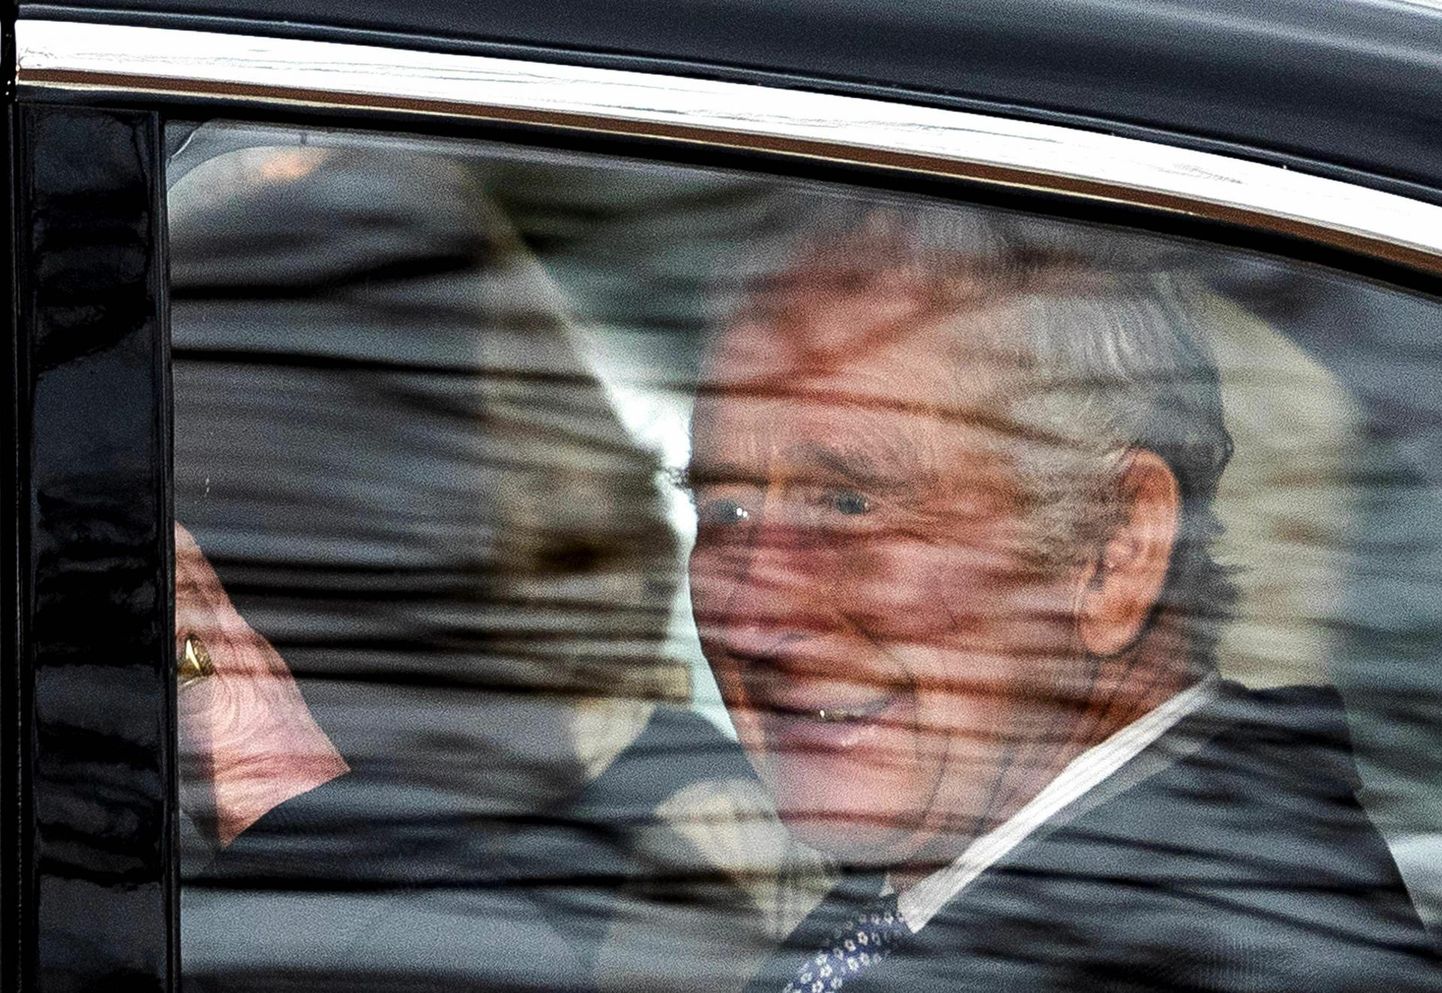 Briti kuningas Charles III päev pärast oma vähidiagnoosi avalikustamist autos koos kuninganna Camillaga. Fotokaamera tabas monarhi 6. veebruaril, mil ta lahkus oma residentsist Clarence House’is, et sõita Buckinghami paleesse.

 